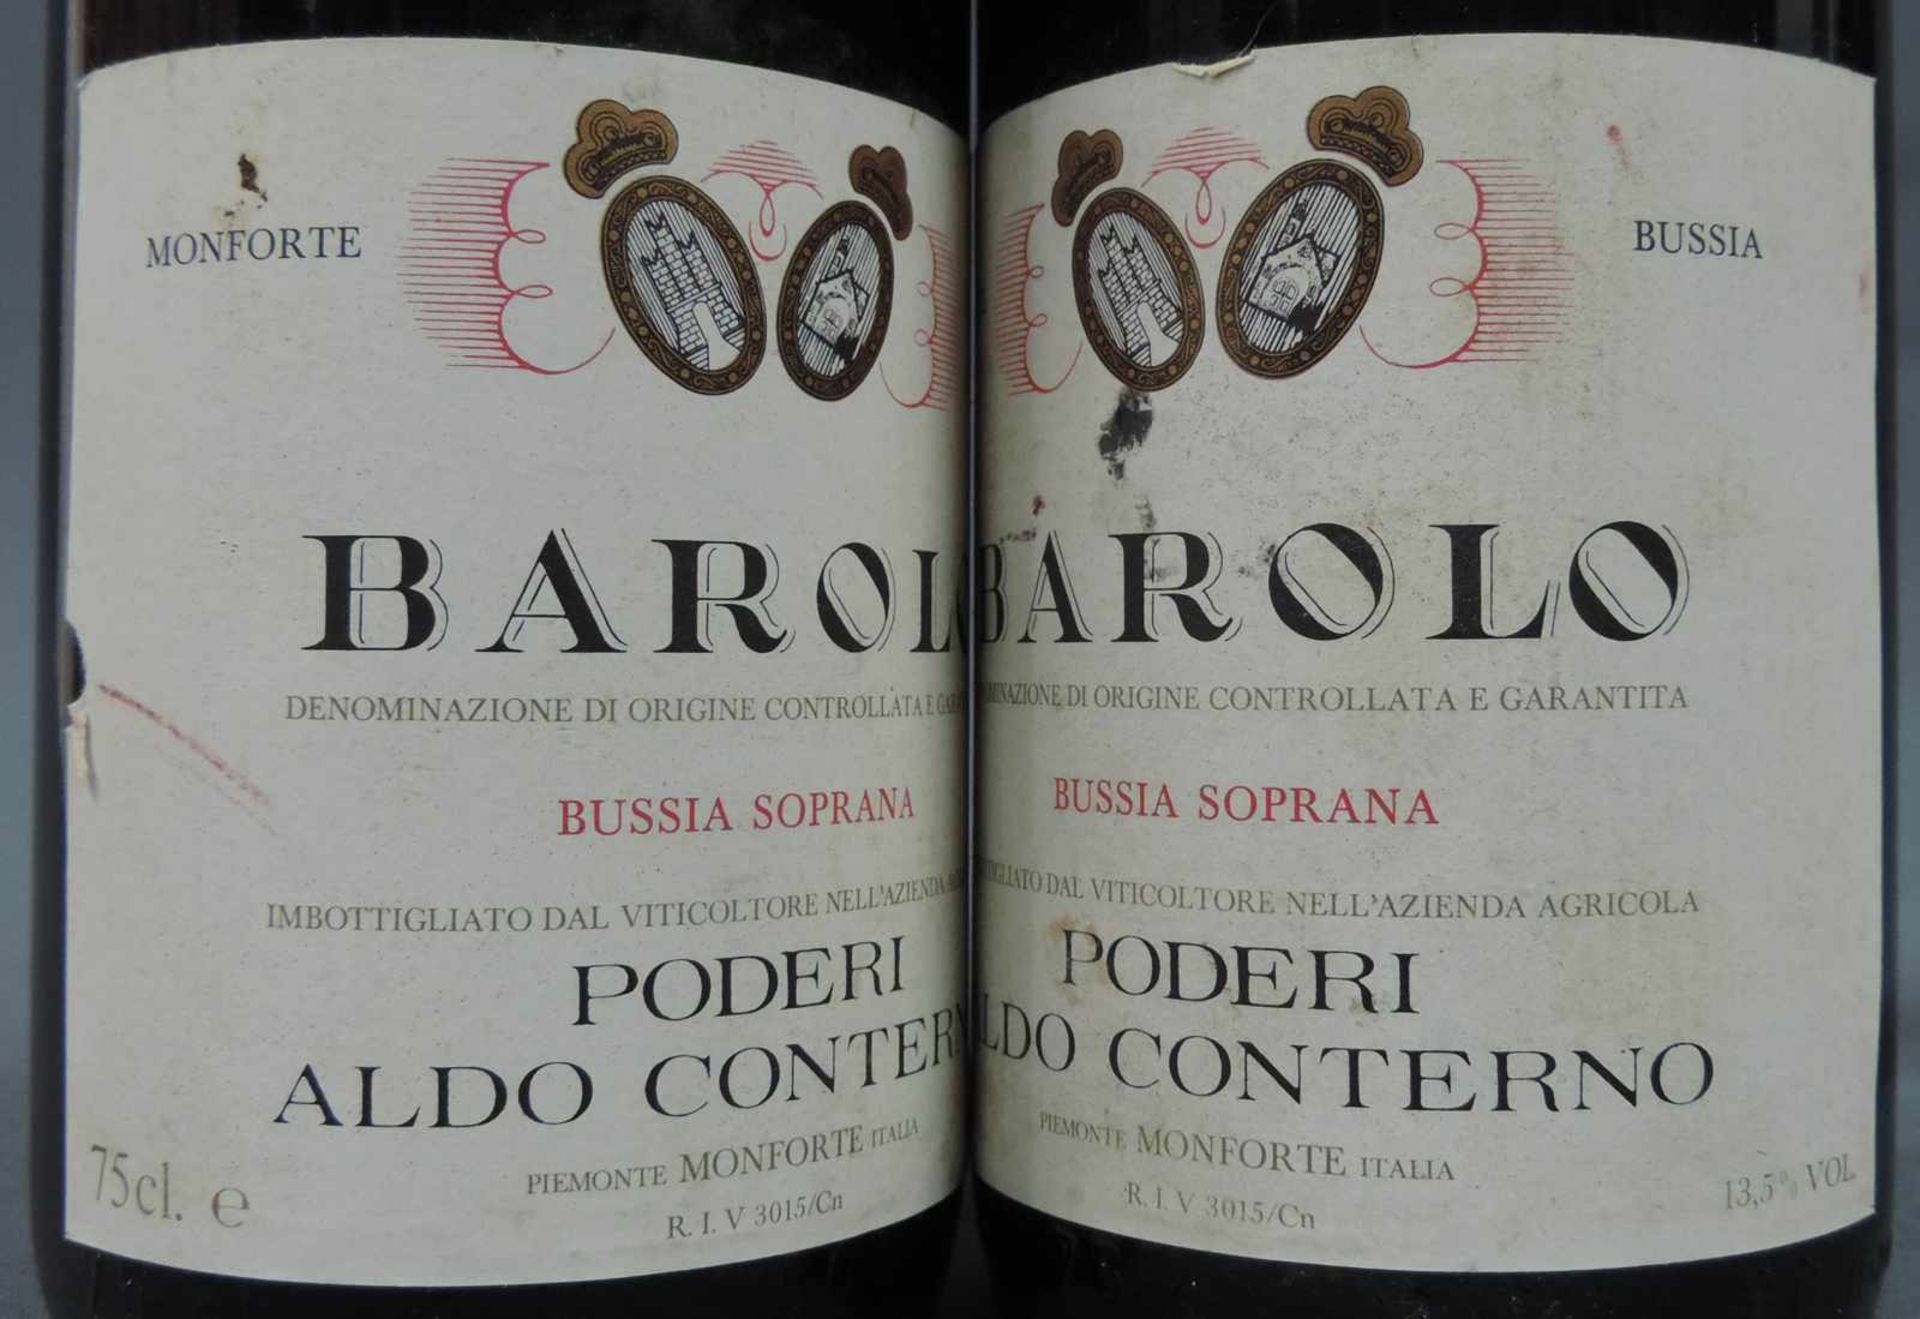 1982 Barolo, DOCG, Italien. Rotwein. 3 ganze Flaschen. 75 cl. 13,5 % Vol. Gute Erscheinung. 1982 - Bild 4 aus 6